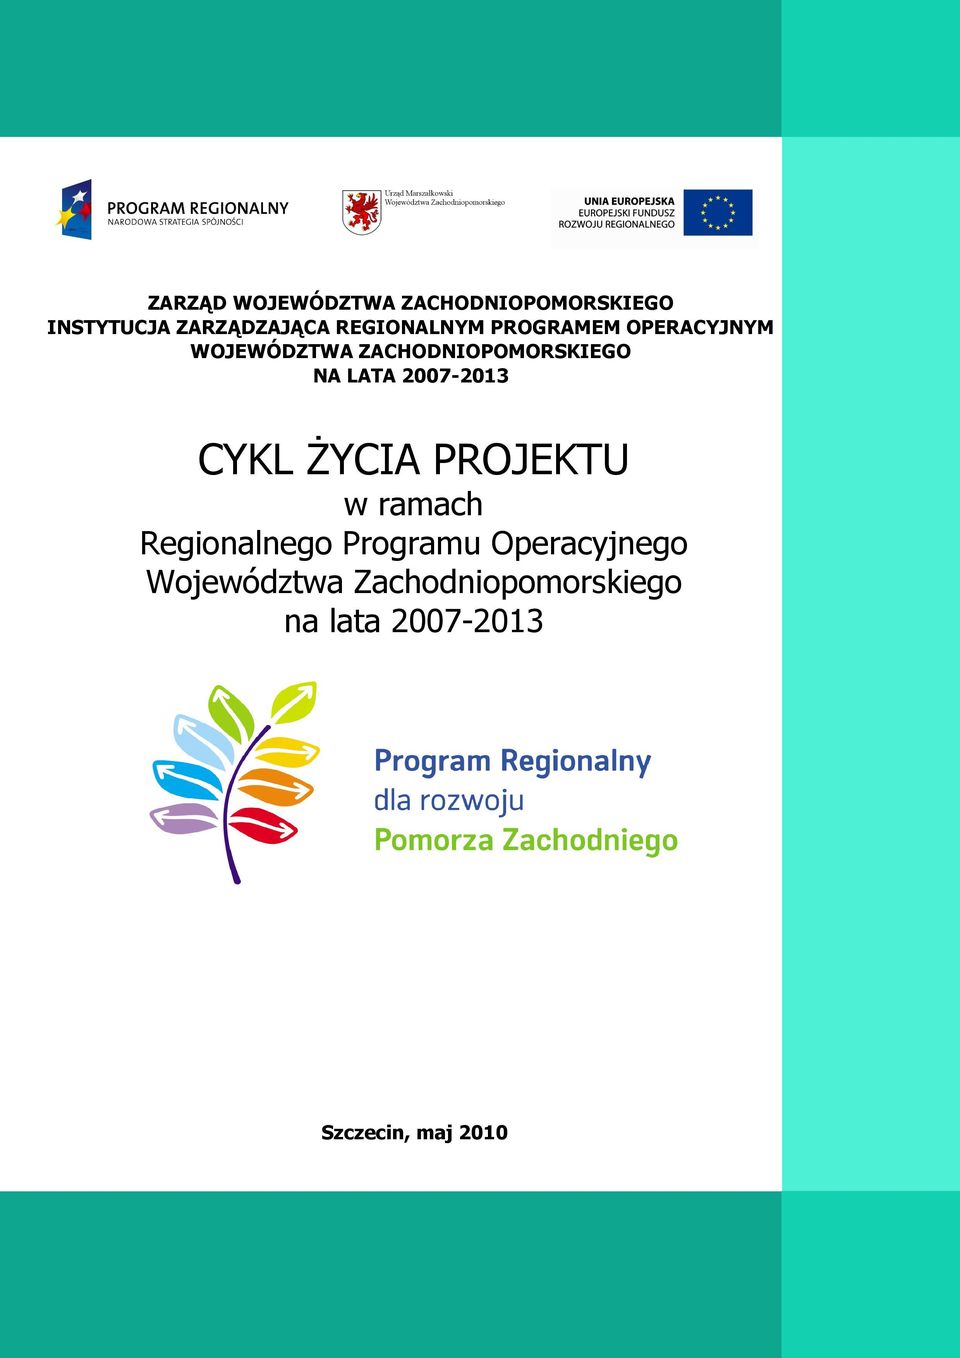 LATA 2007-2013 CYKL ŻYCIA PROJEKTU w ramach Regionalnego Programu